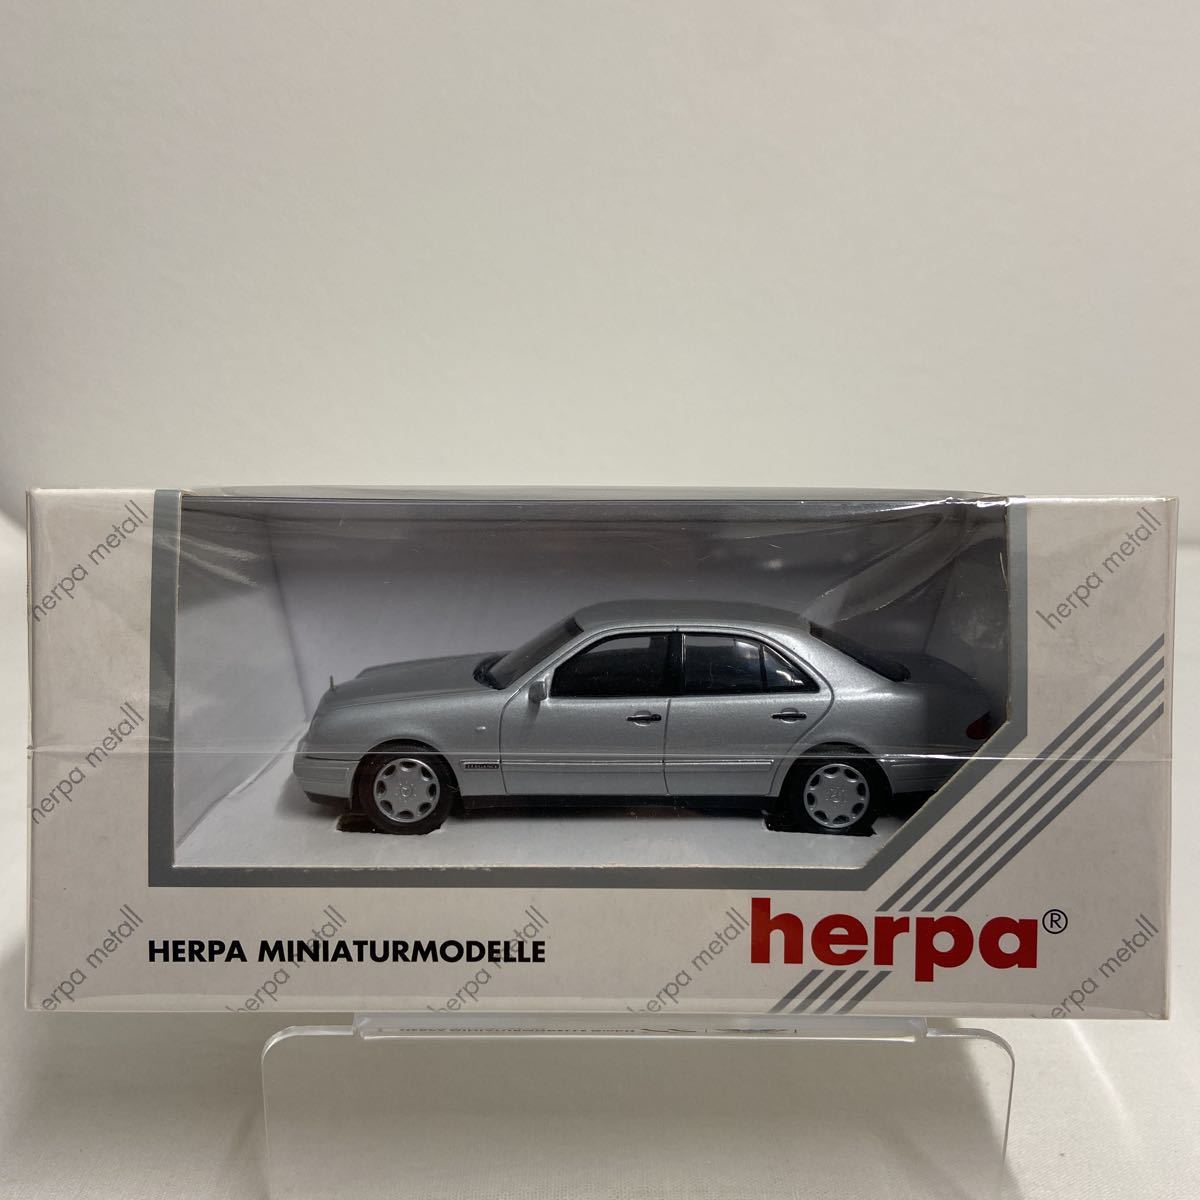 herpa 1/43 Mercedes Benz E280 Elegance ヘルパ メルセデスベンツ Eクラス セダン W210 シルバー ミニカー モデルカー_画像2